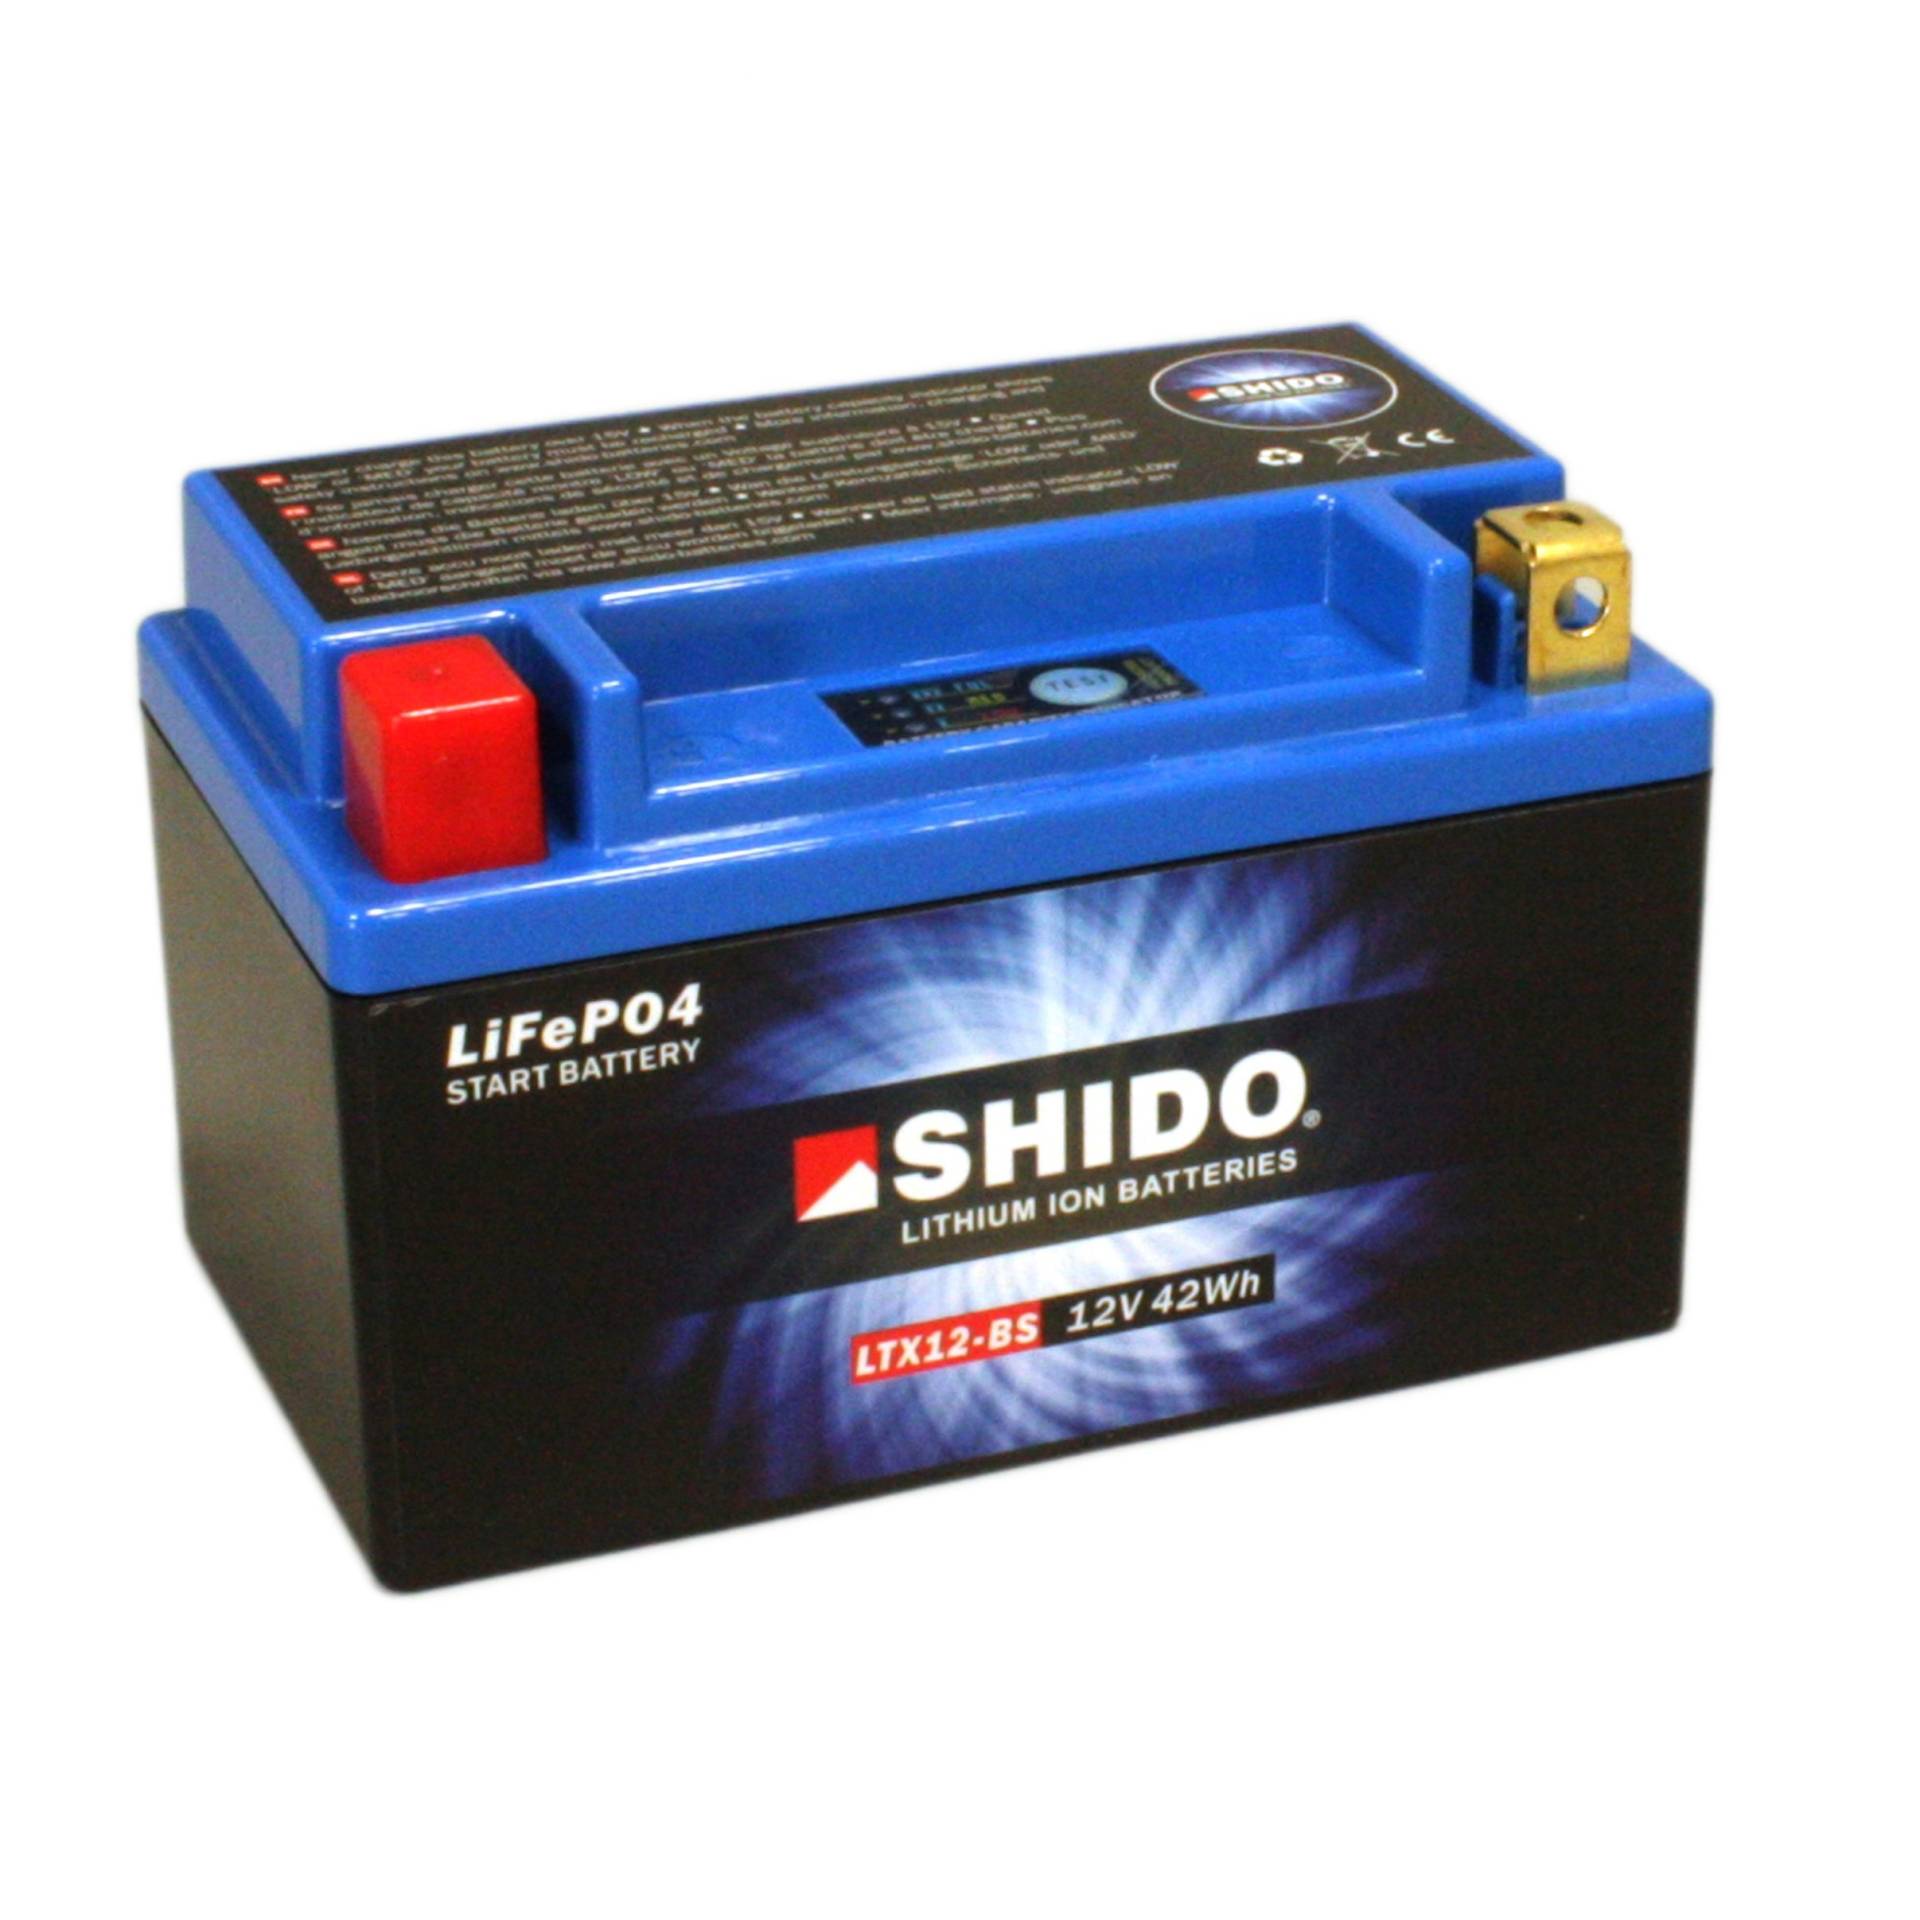 Batterie Shido Lithium LTX12-BS / YTX12-BS, 12V/10AH (Maße: 150x87x130) für Suzuki DL650 A V-Strom Traveler ABS Baujahr 2007 von Shido